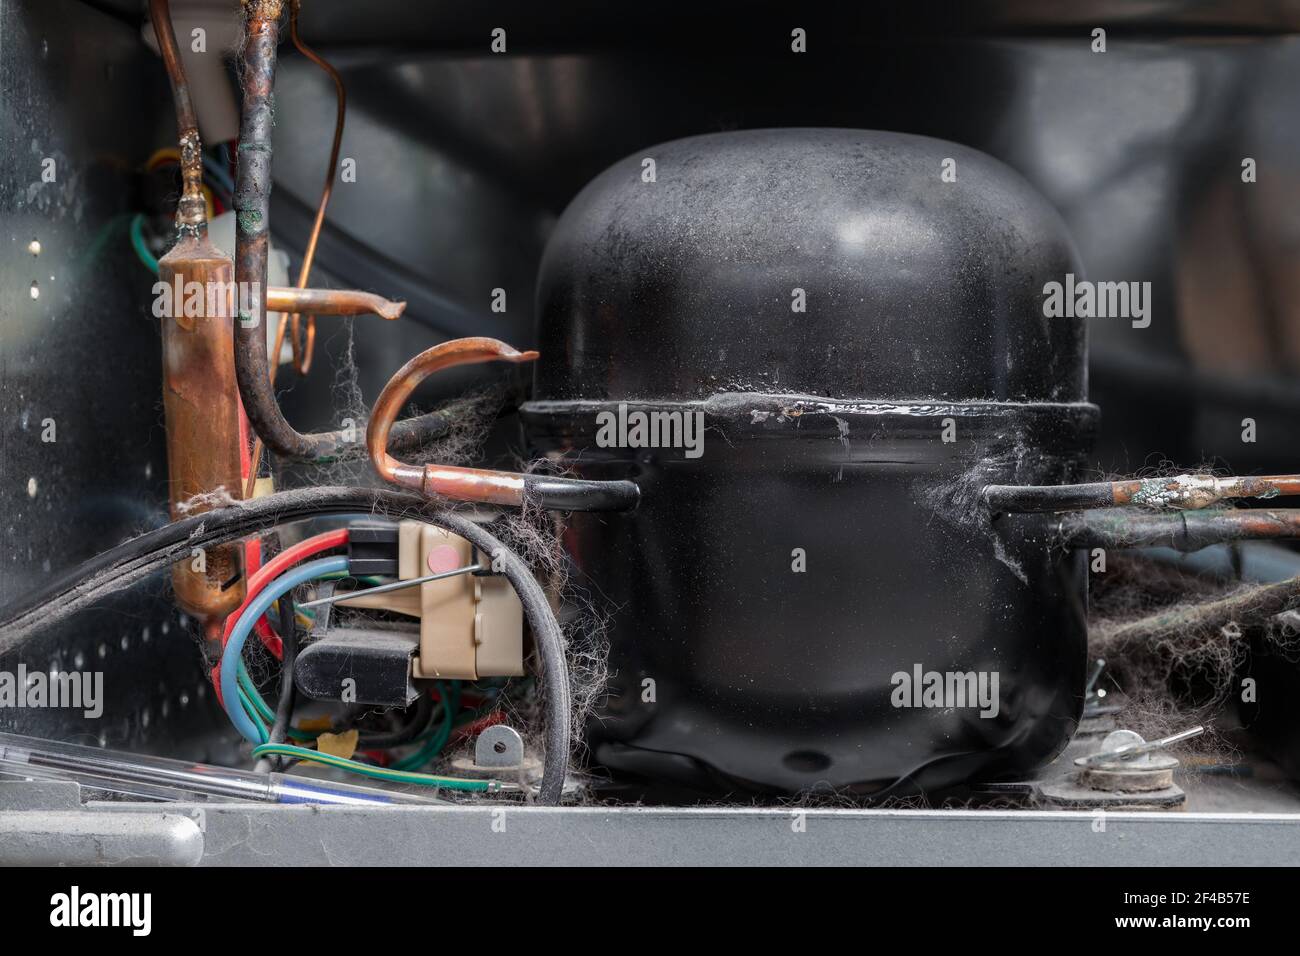 Compresseur frigo Banque de photographies et d'images à haute résolution -  Alamy